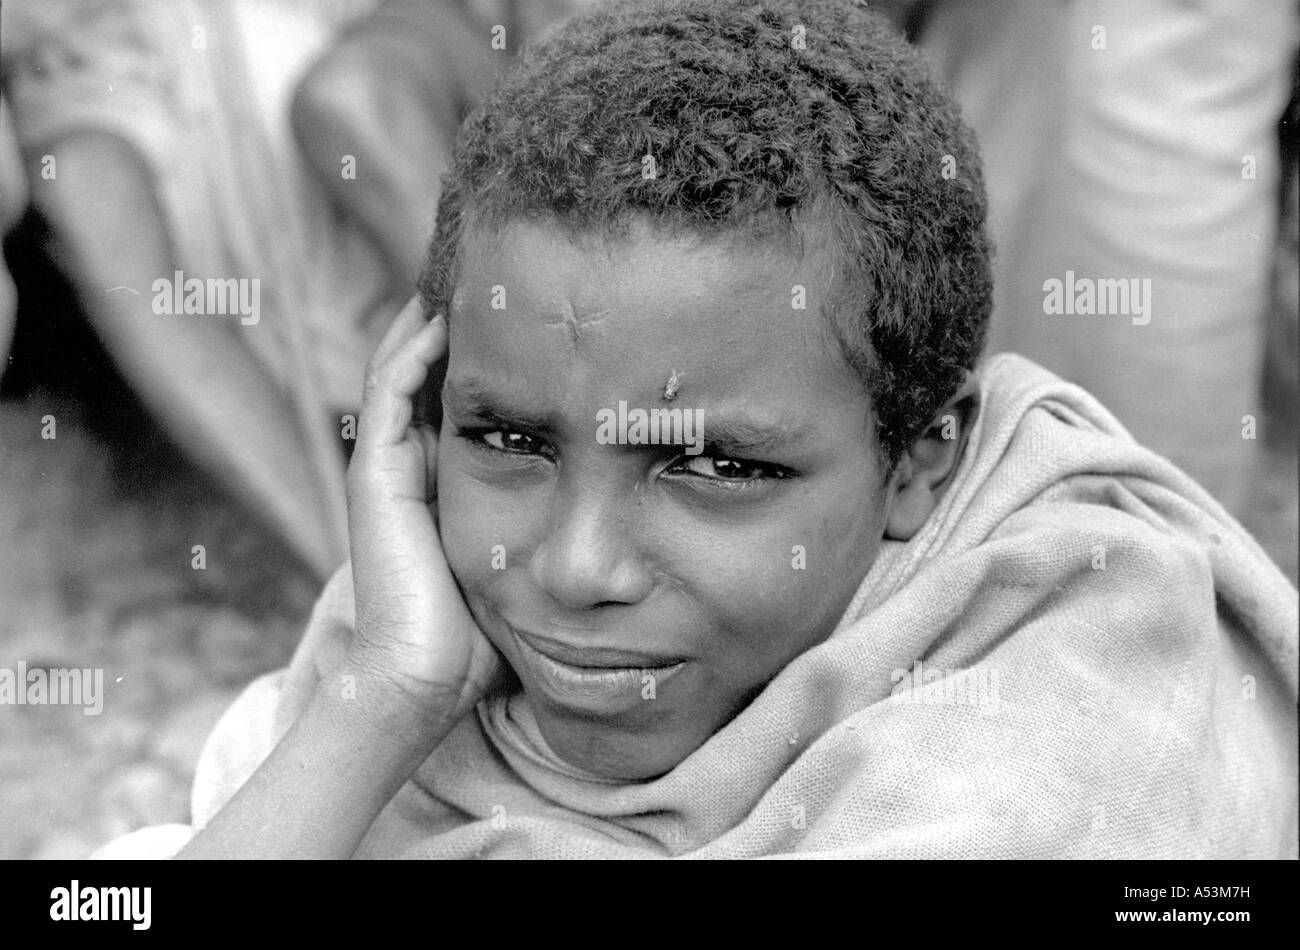 Painet ha1610 324 bianco e nero ragazzo di stress in attesa della distribuzione alimentare centro harer Etiopia paese nazione in via di sviluppo meno Foto Stock